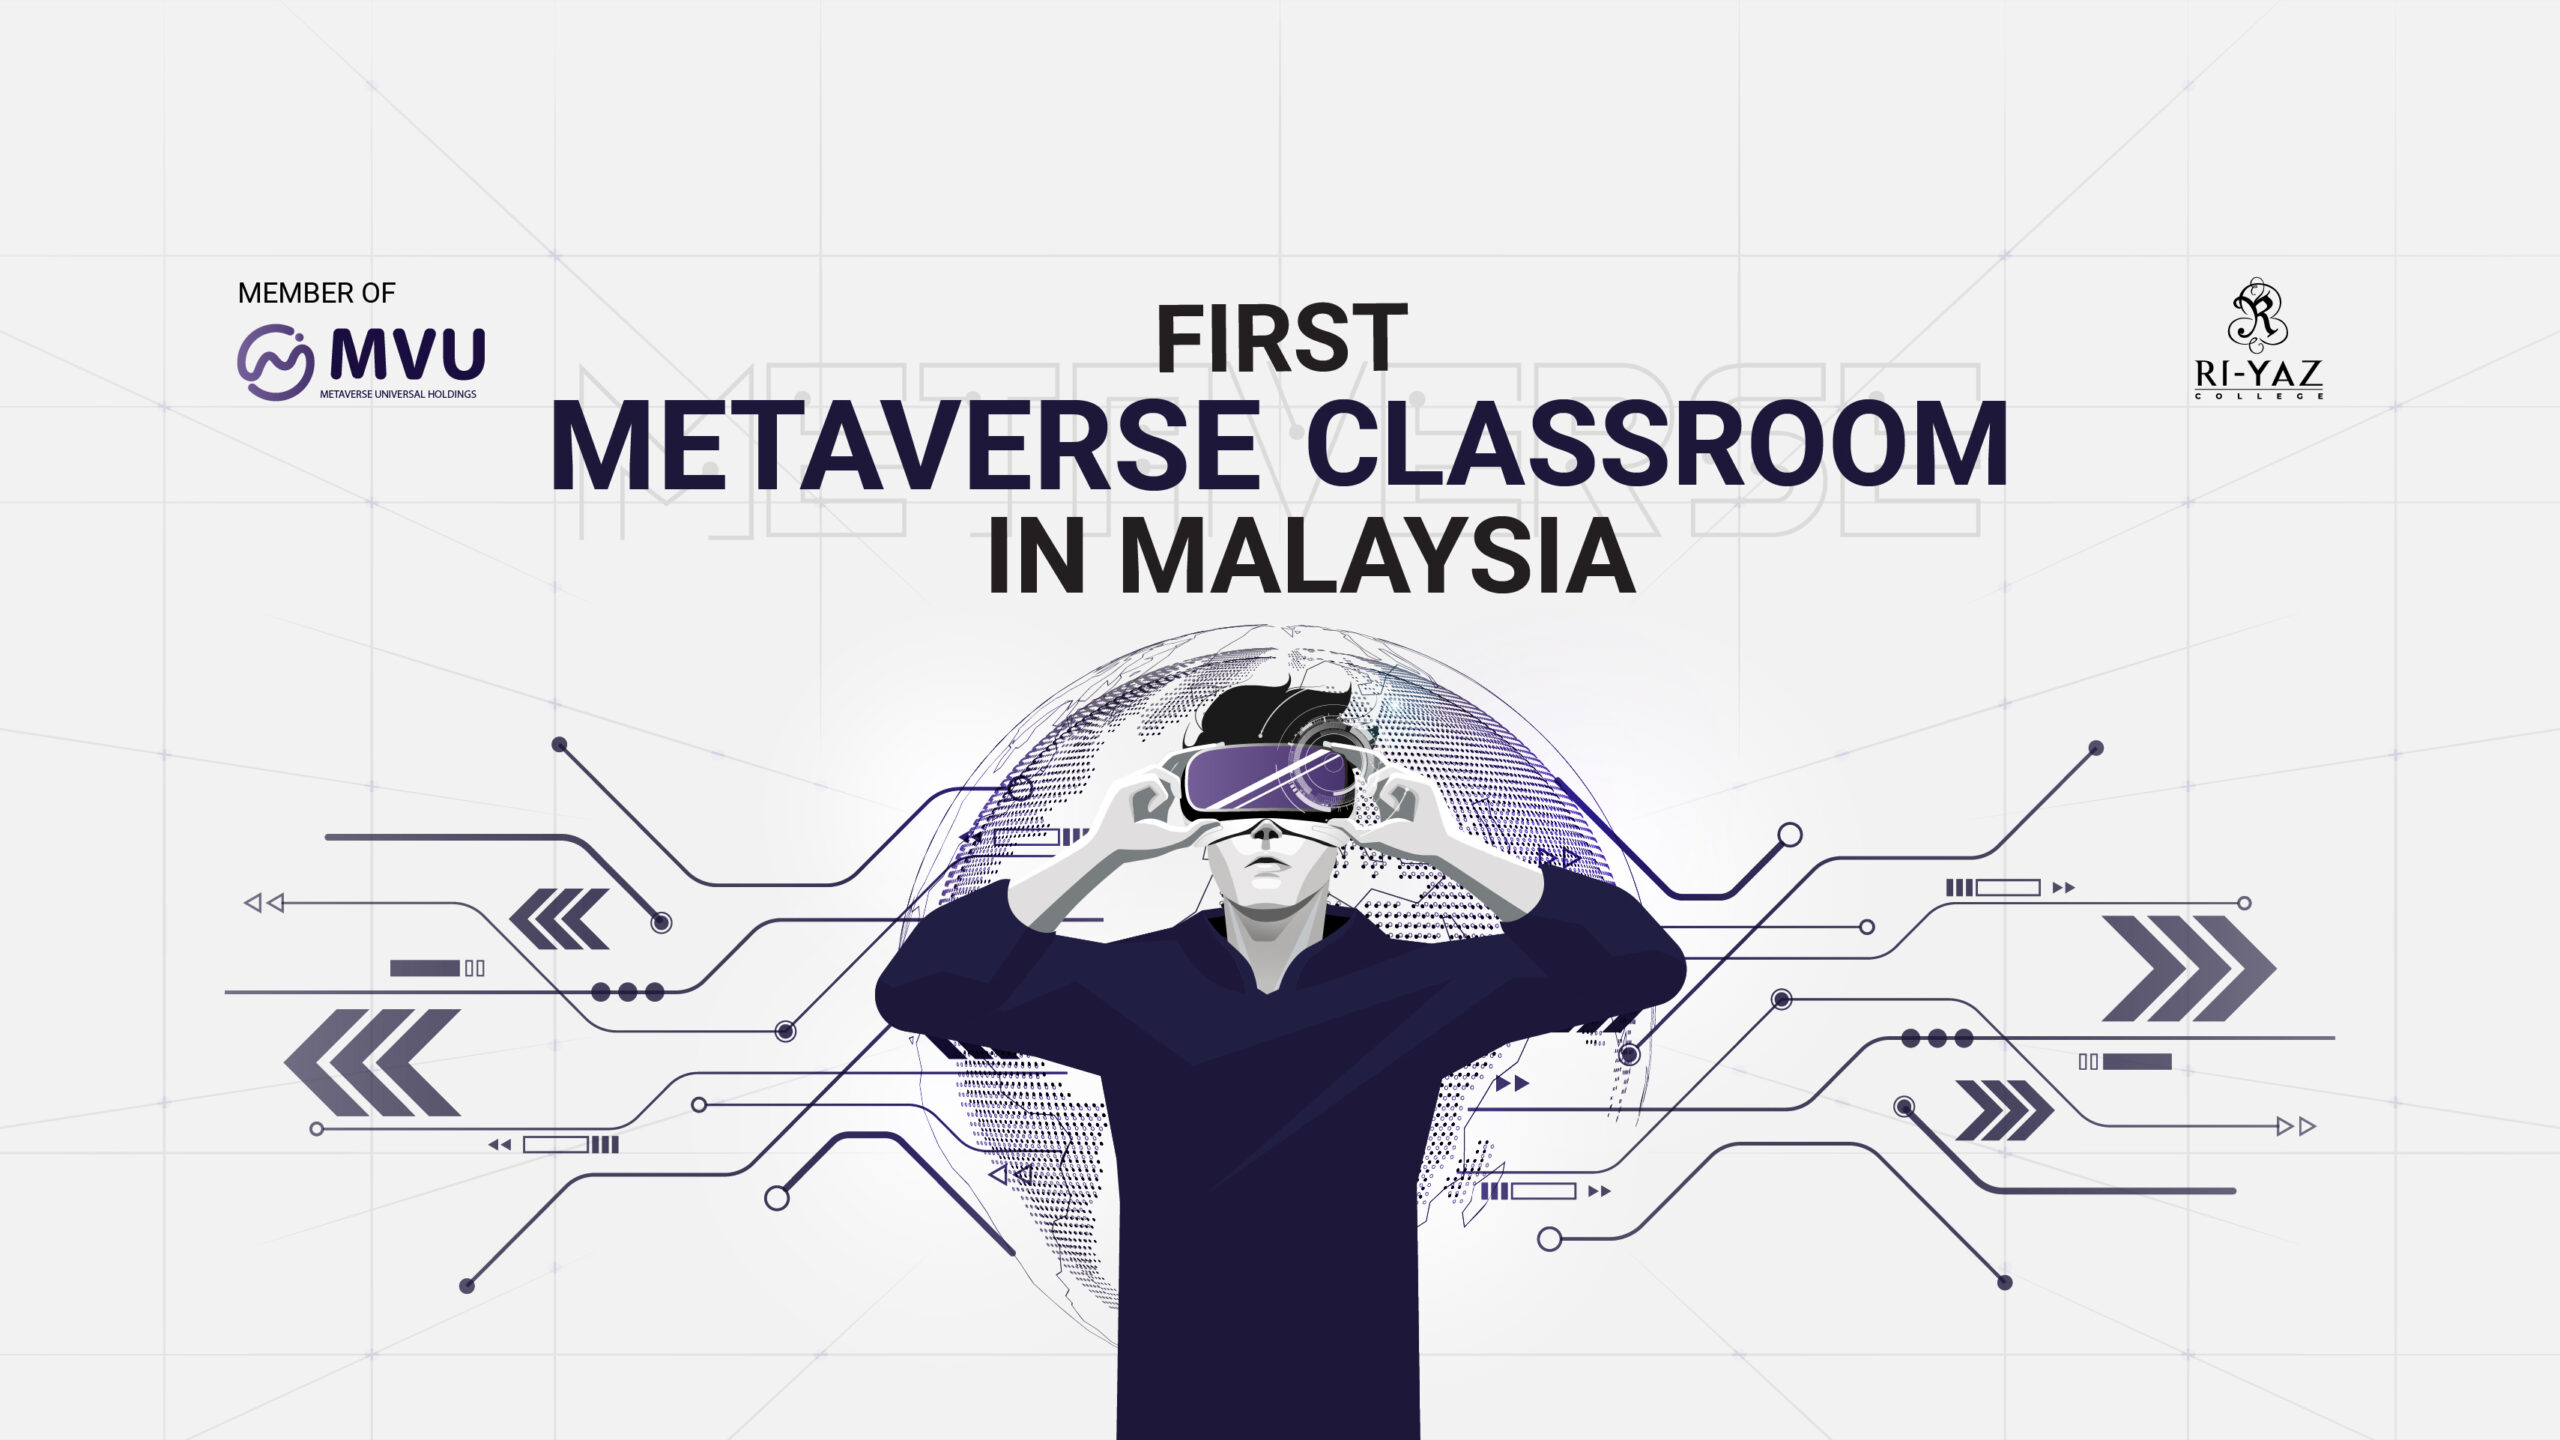 La Malesia rivela un programma educativo basato sul Metaverso